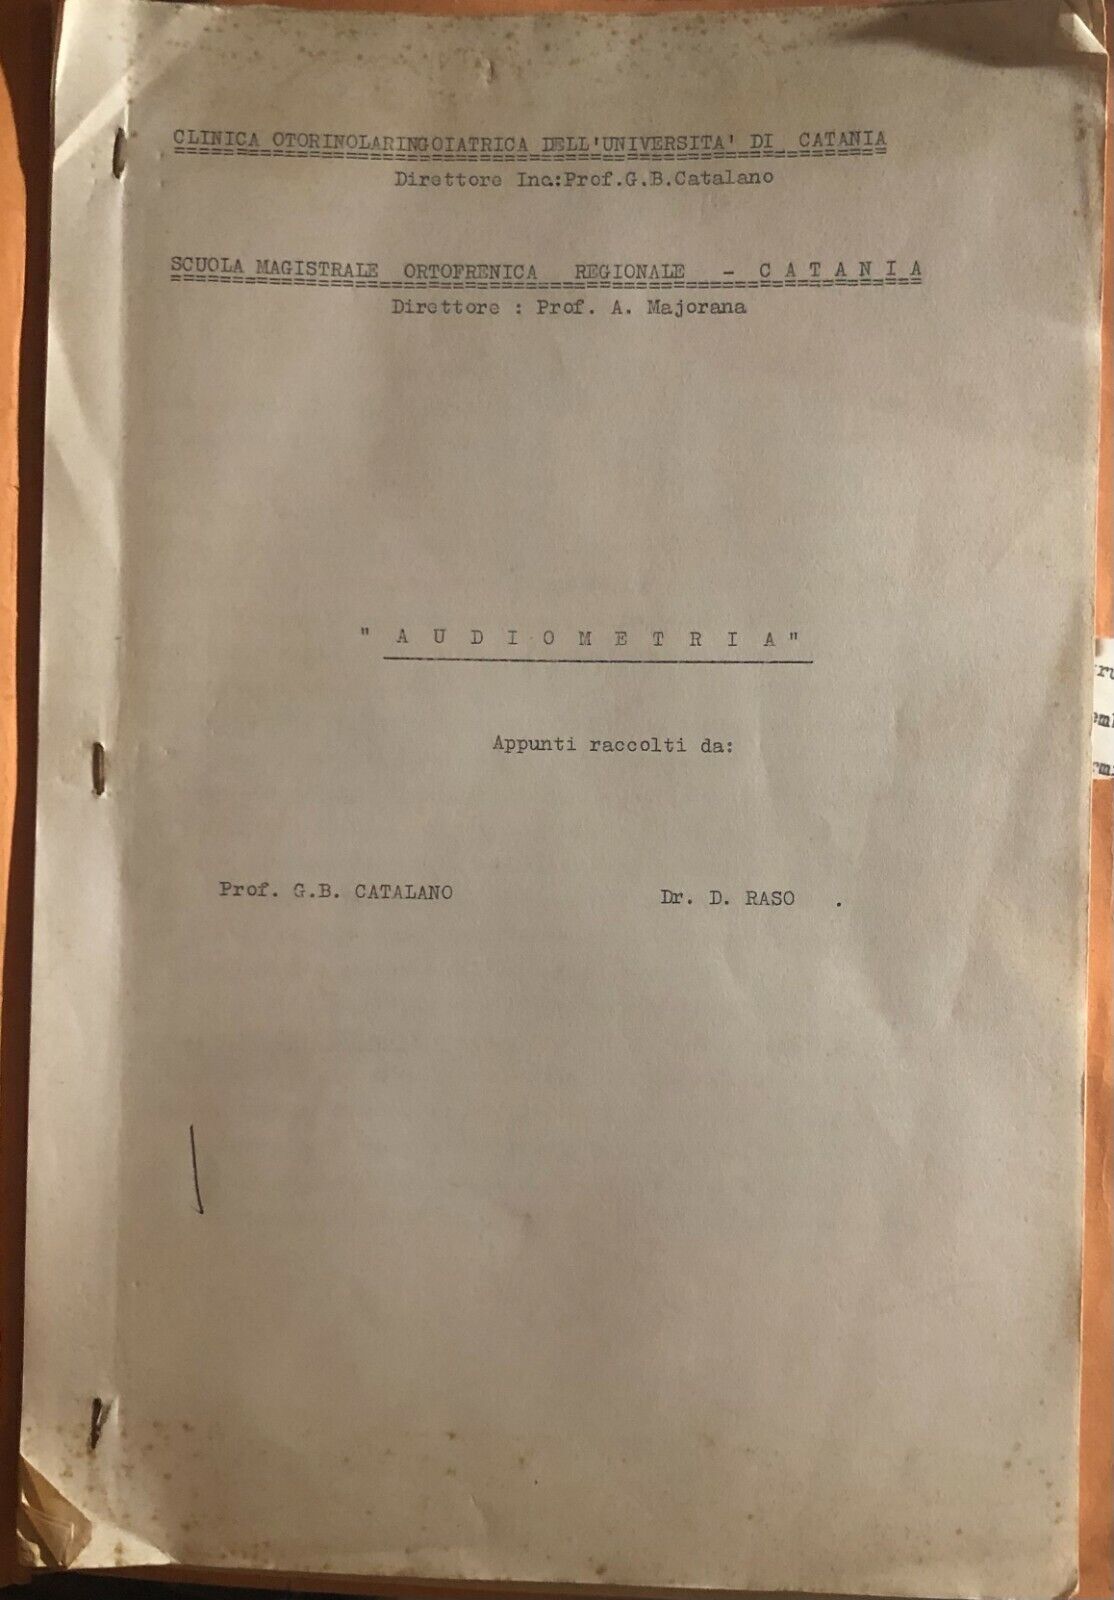 Audiometria APPUNTI di Prof. G.b. Catalano-dr. D. Raso,  1964,  Scuola Magistral